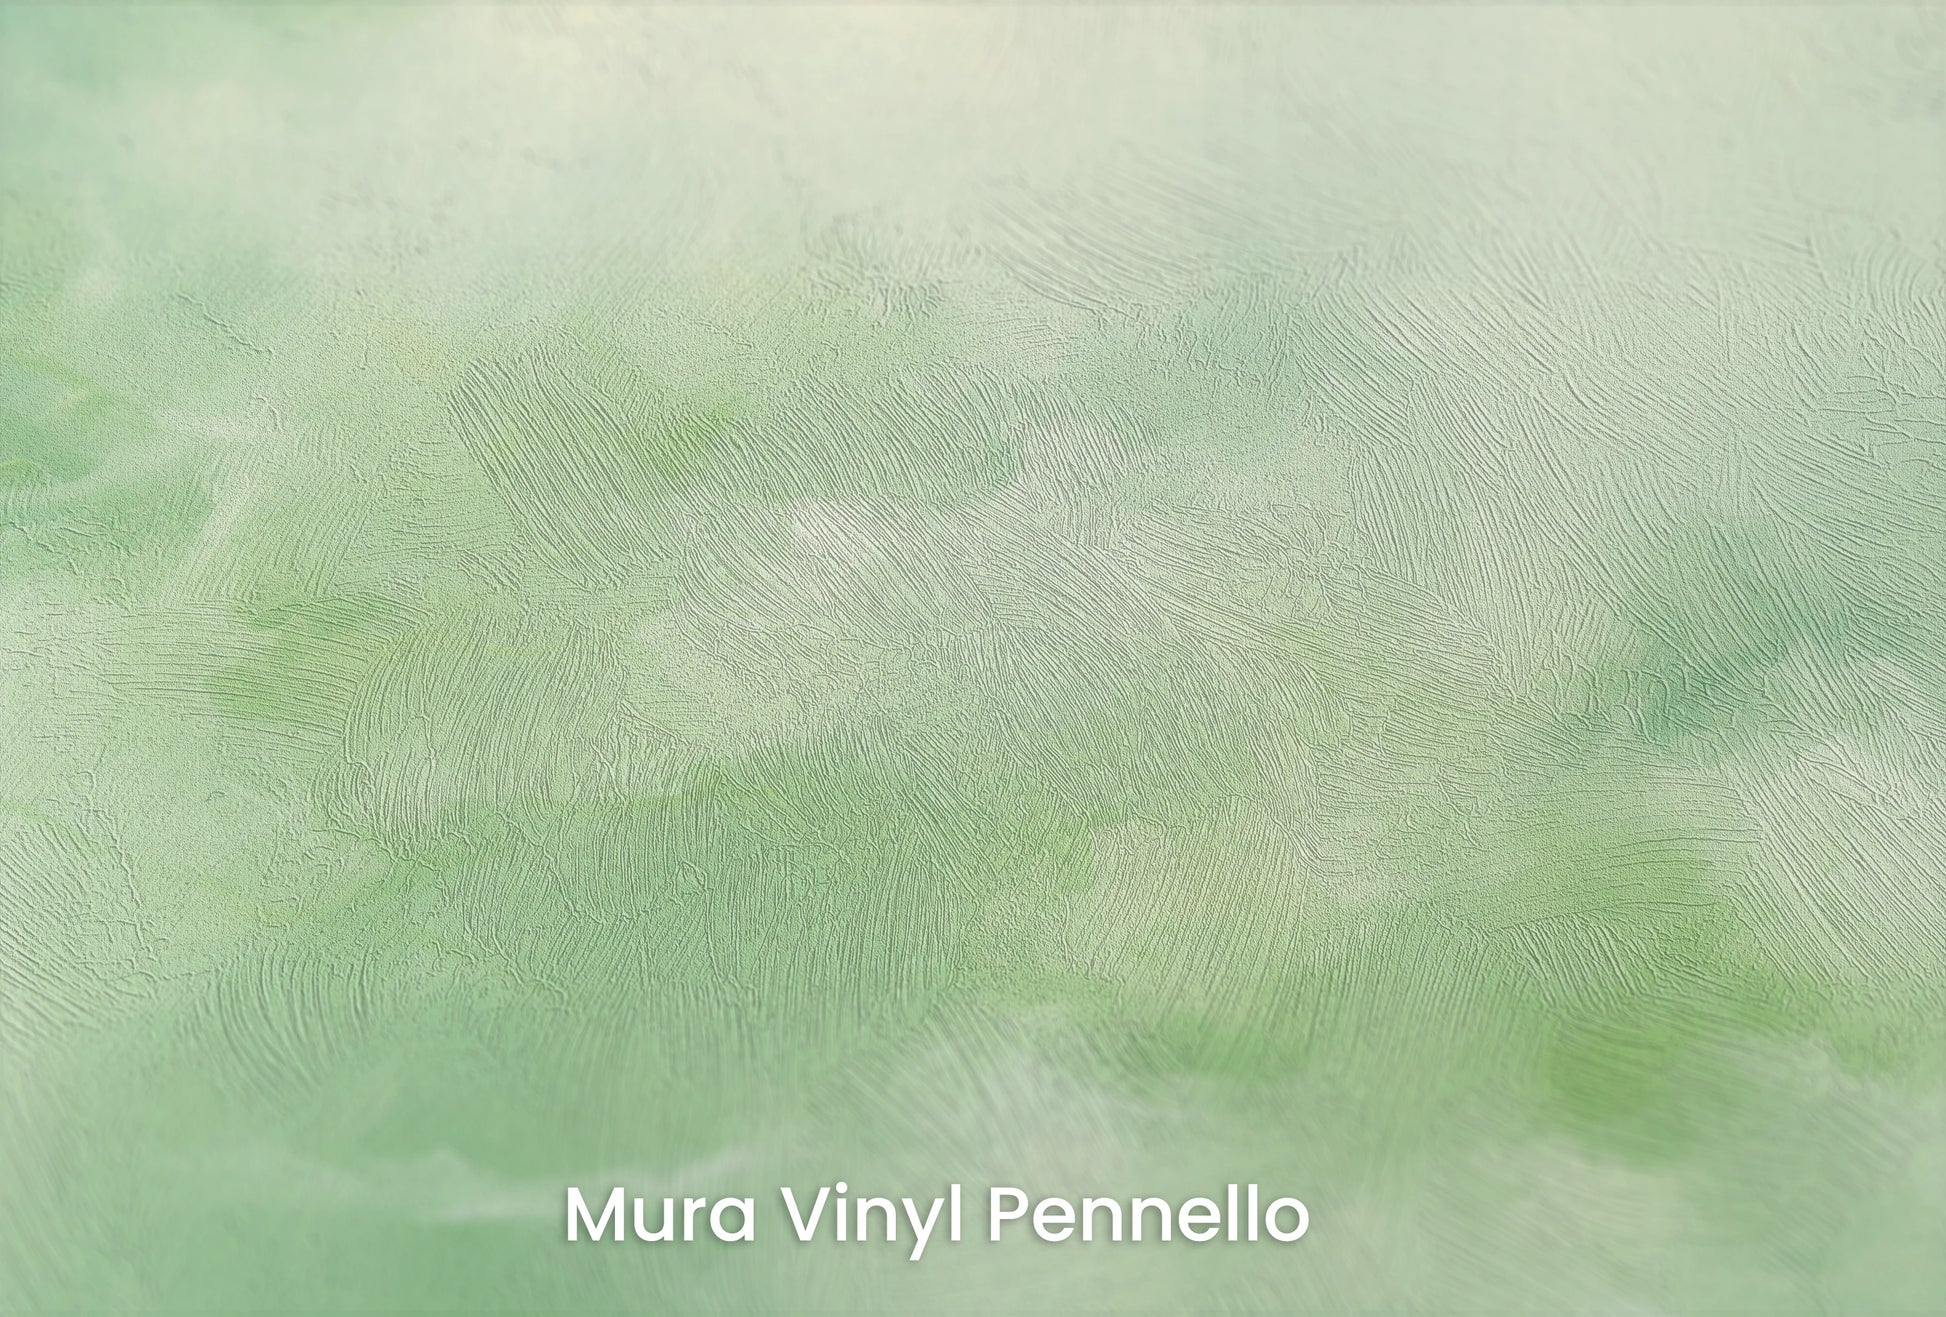 Zbliżenie na artystyczną fototapetę o nazwie Serene Reflection na podłożu Mura Vinyl Pennello - faktura pociągnięć pędzla malarskiego.